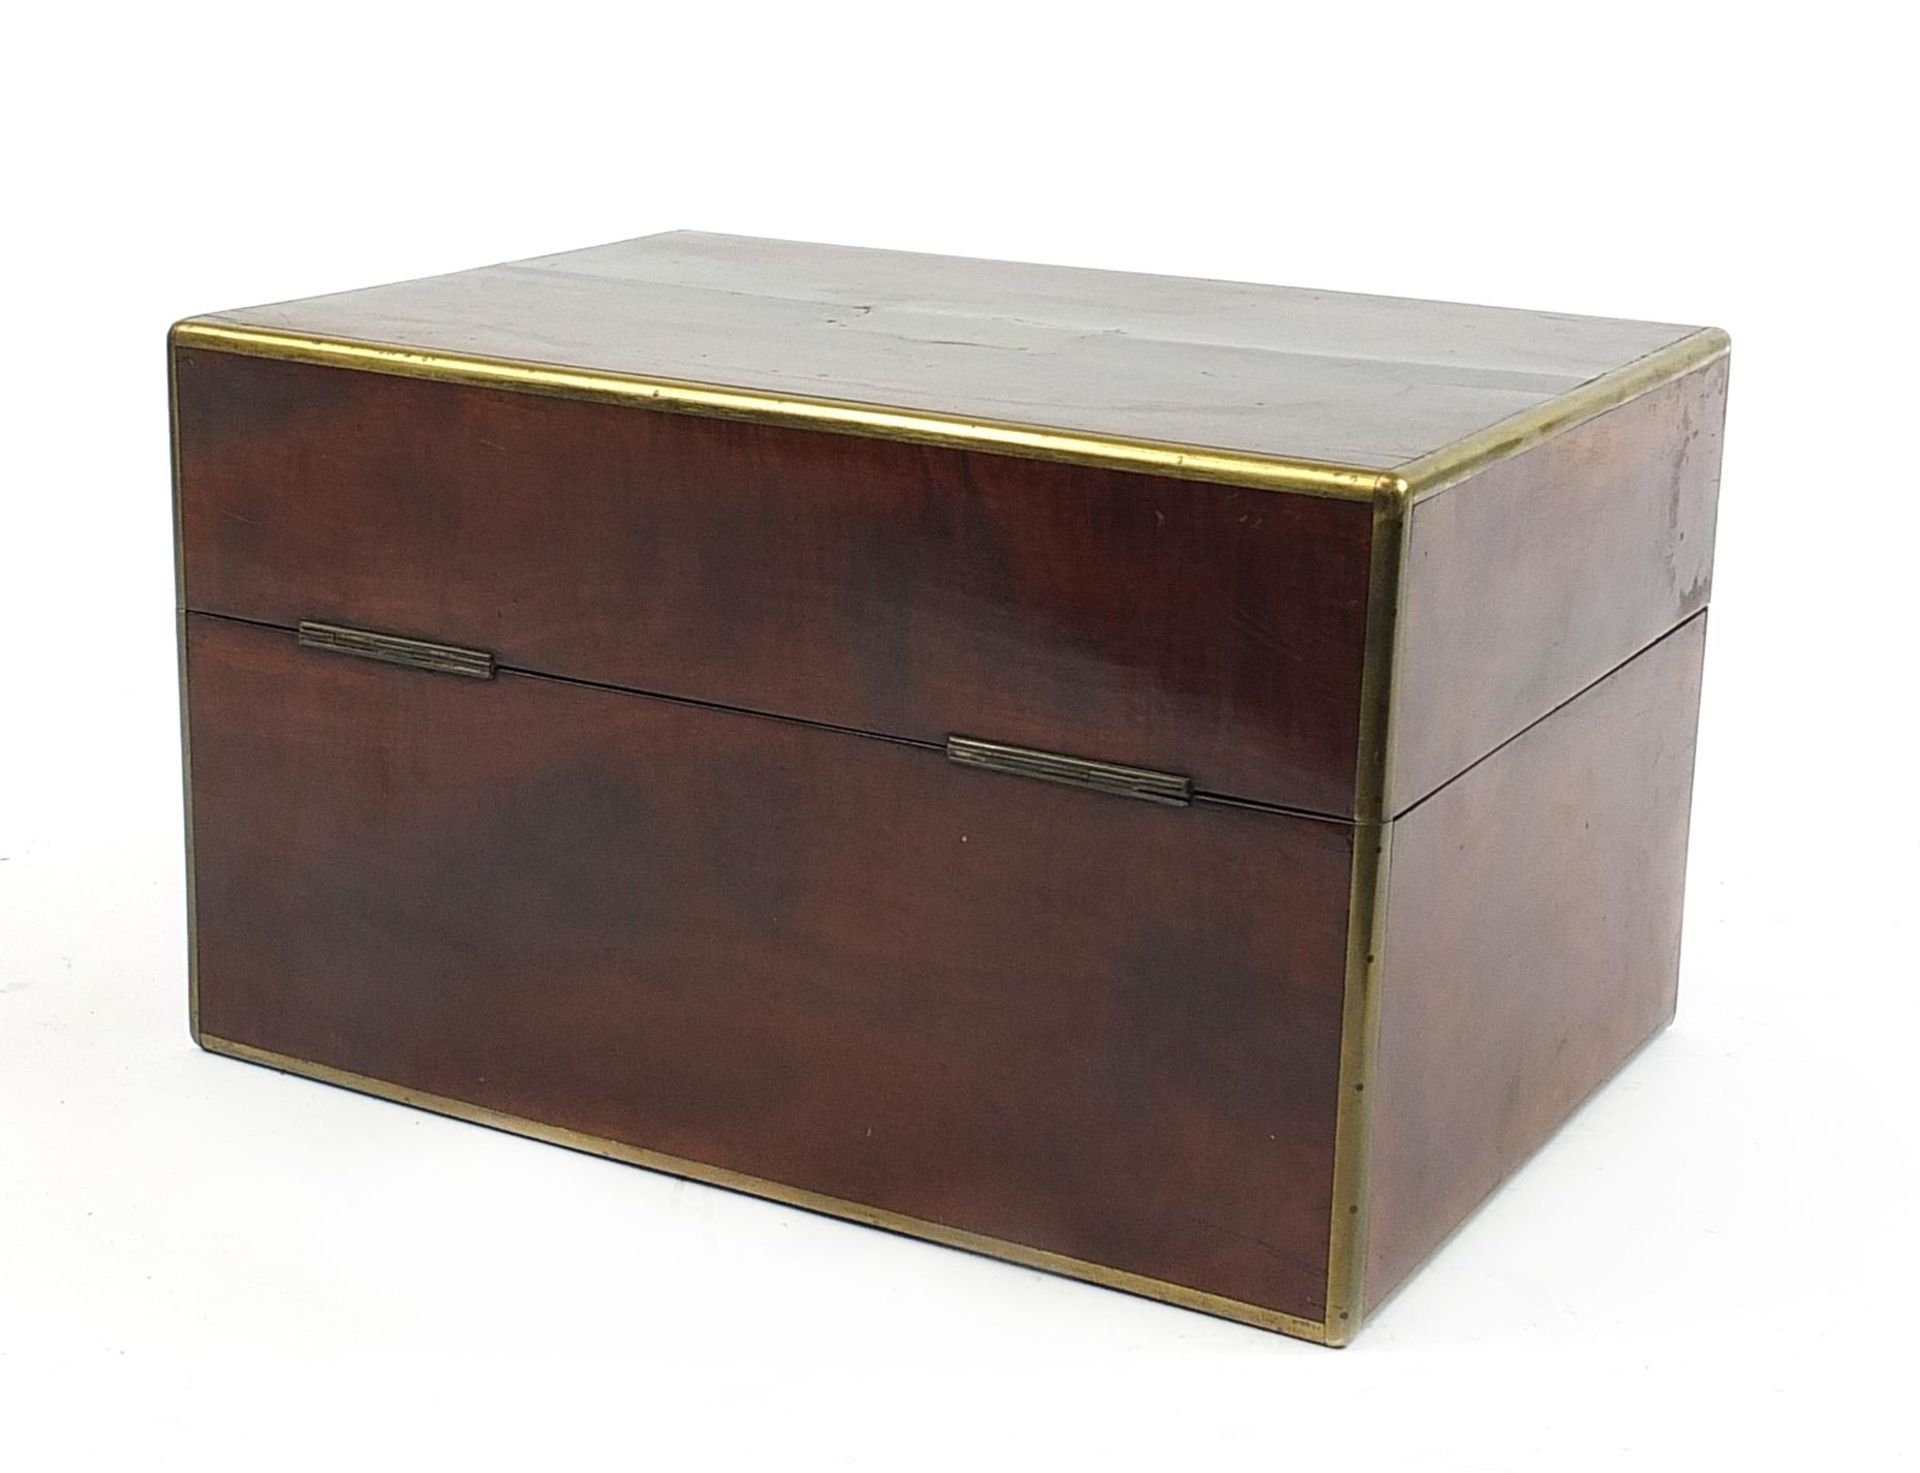 Victorian mahogany box with Brahma lock converted to a humidor, 21cm H x 35.5cm W x 25cm D - Bild 4 aus 5